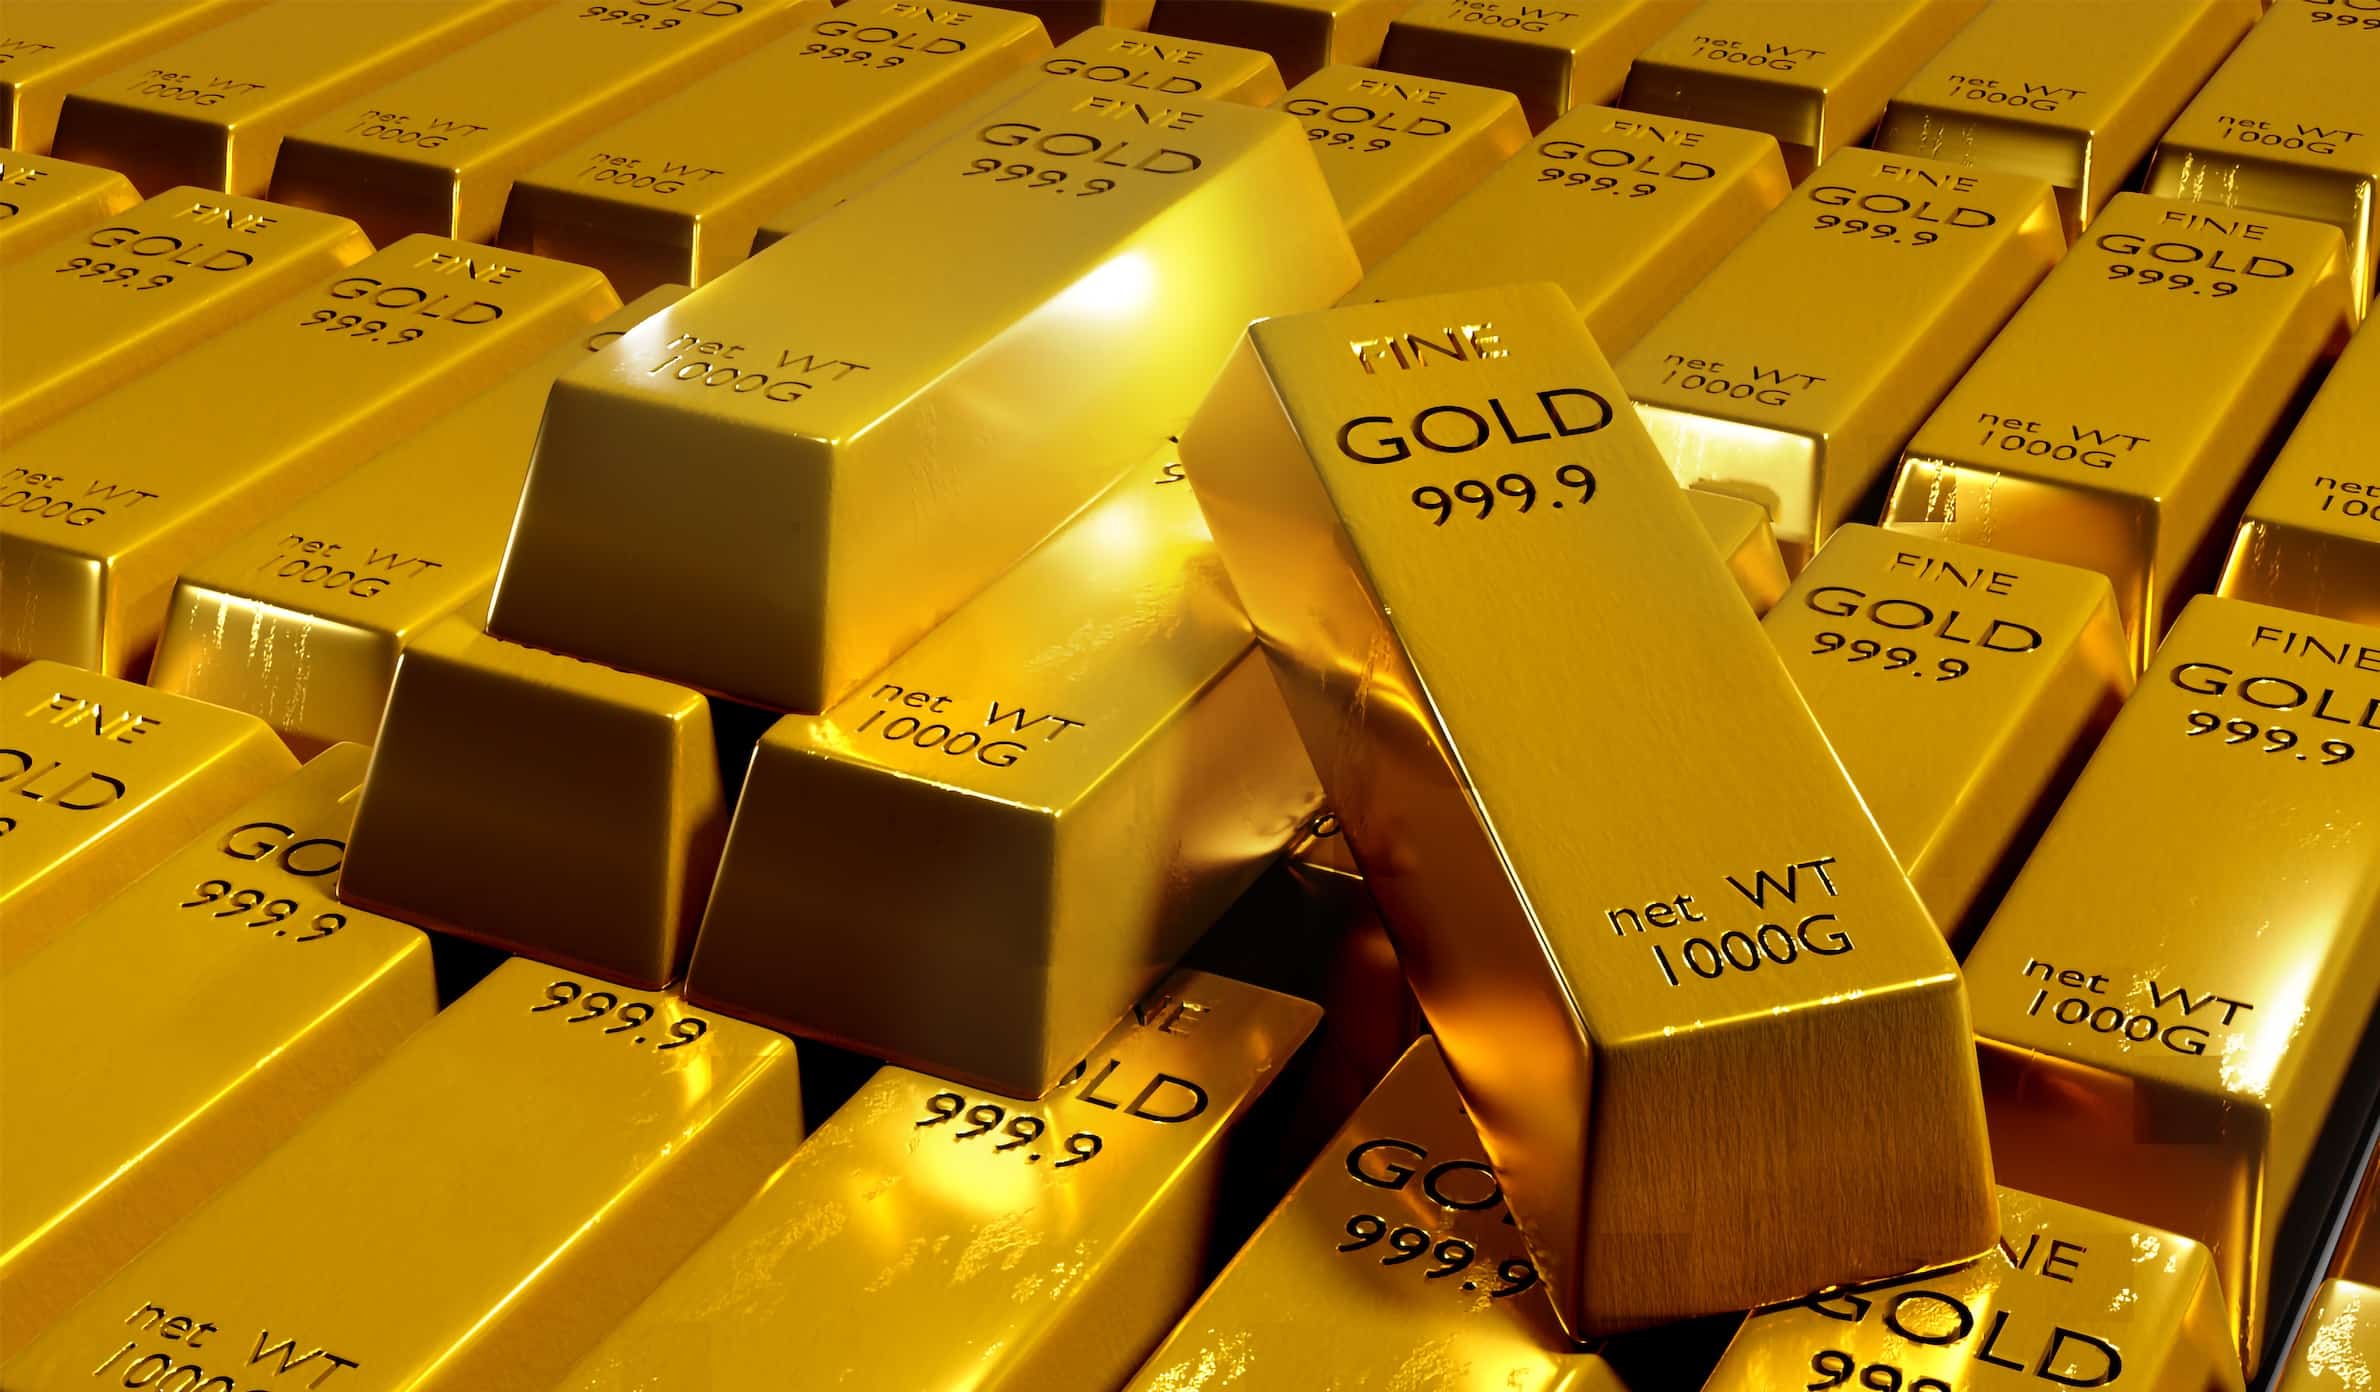  الذهب يرتفع وسط توقعات بقرب خفض أسعار الفائدة